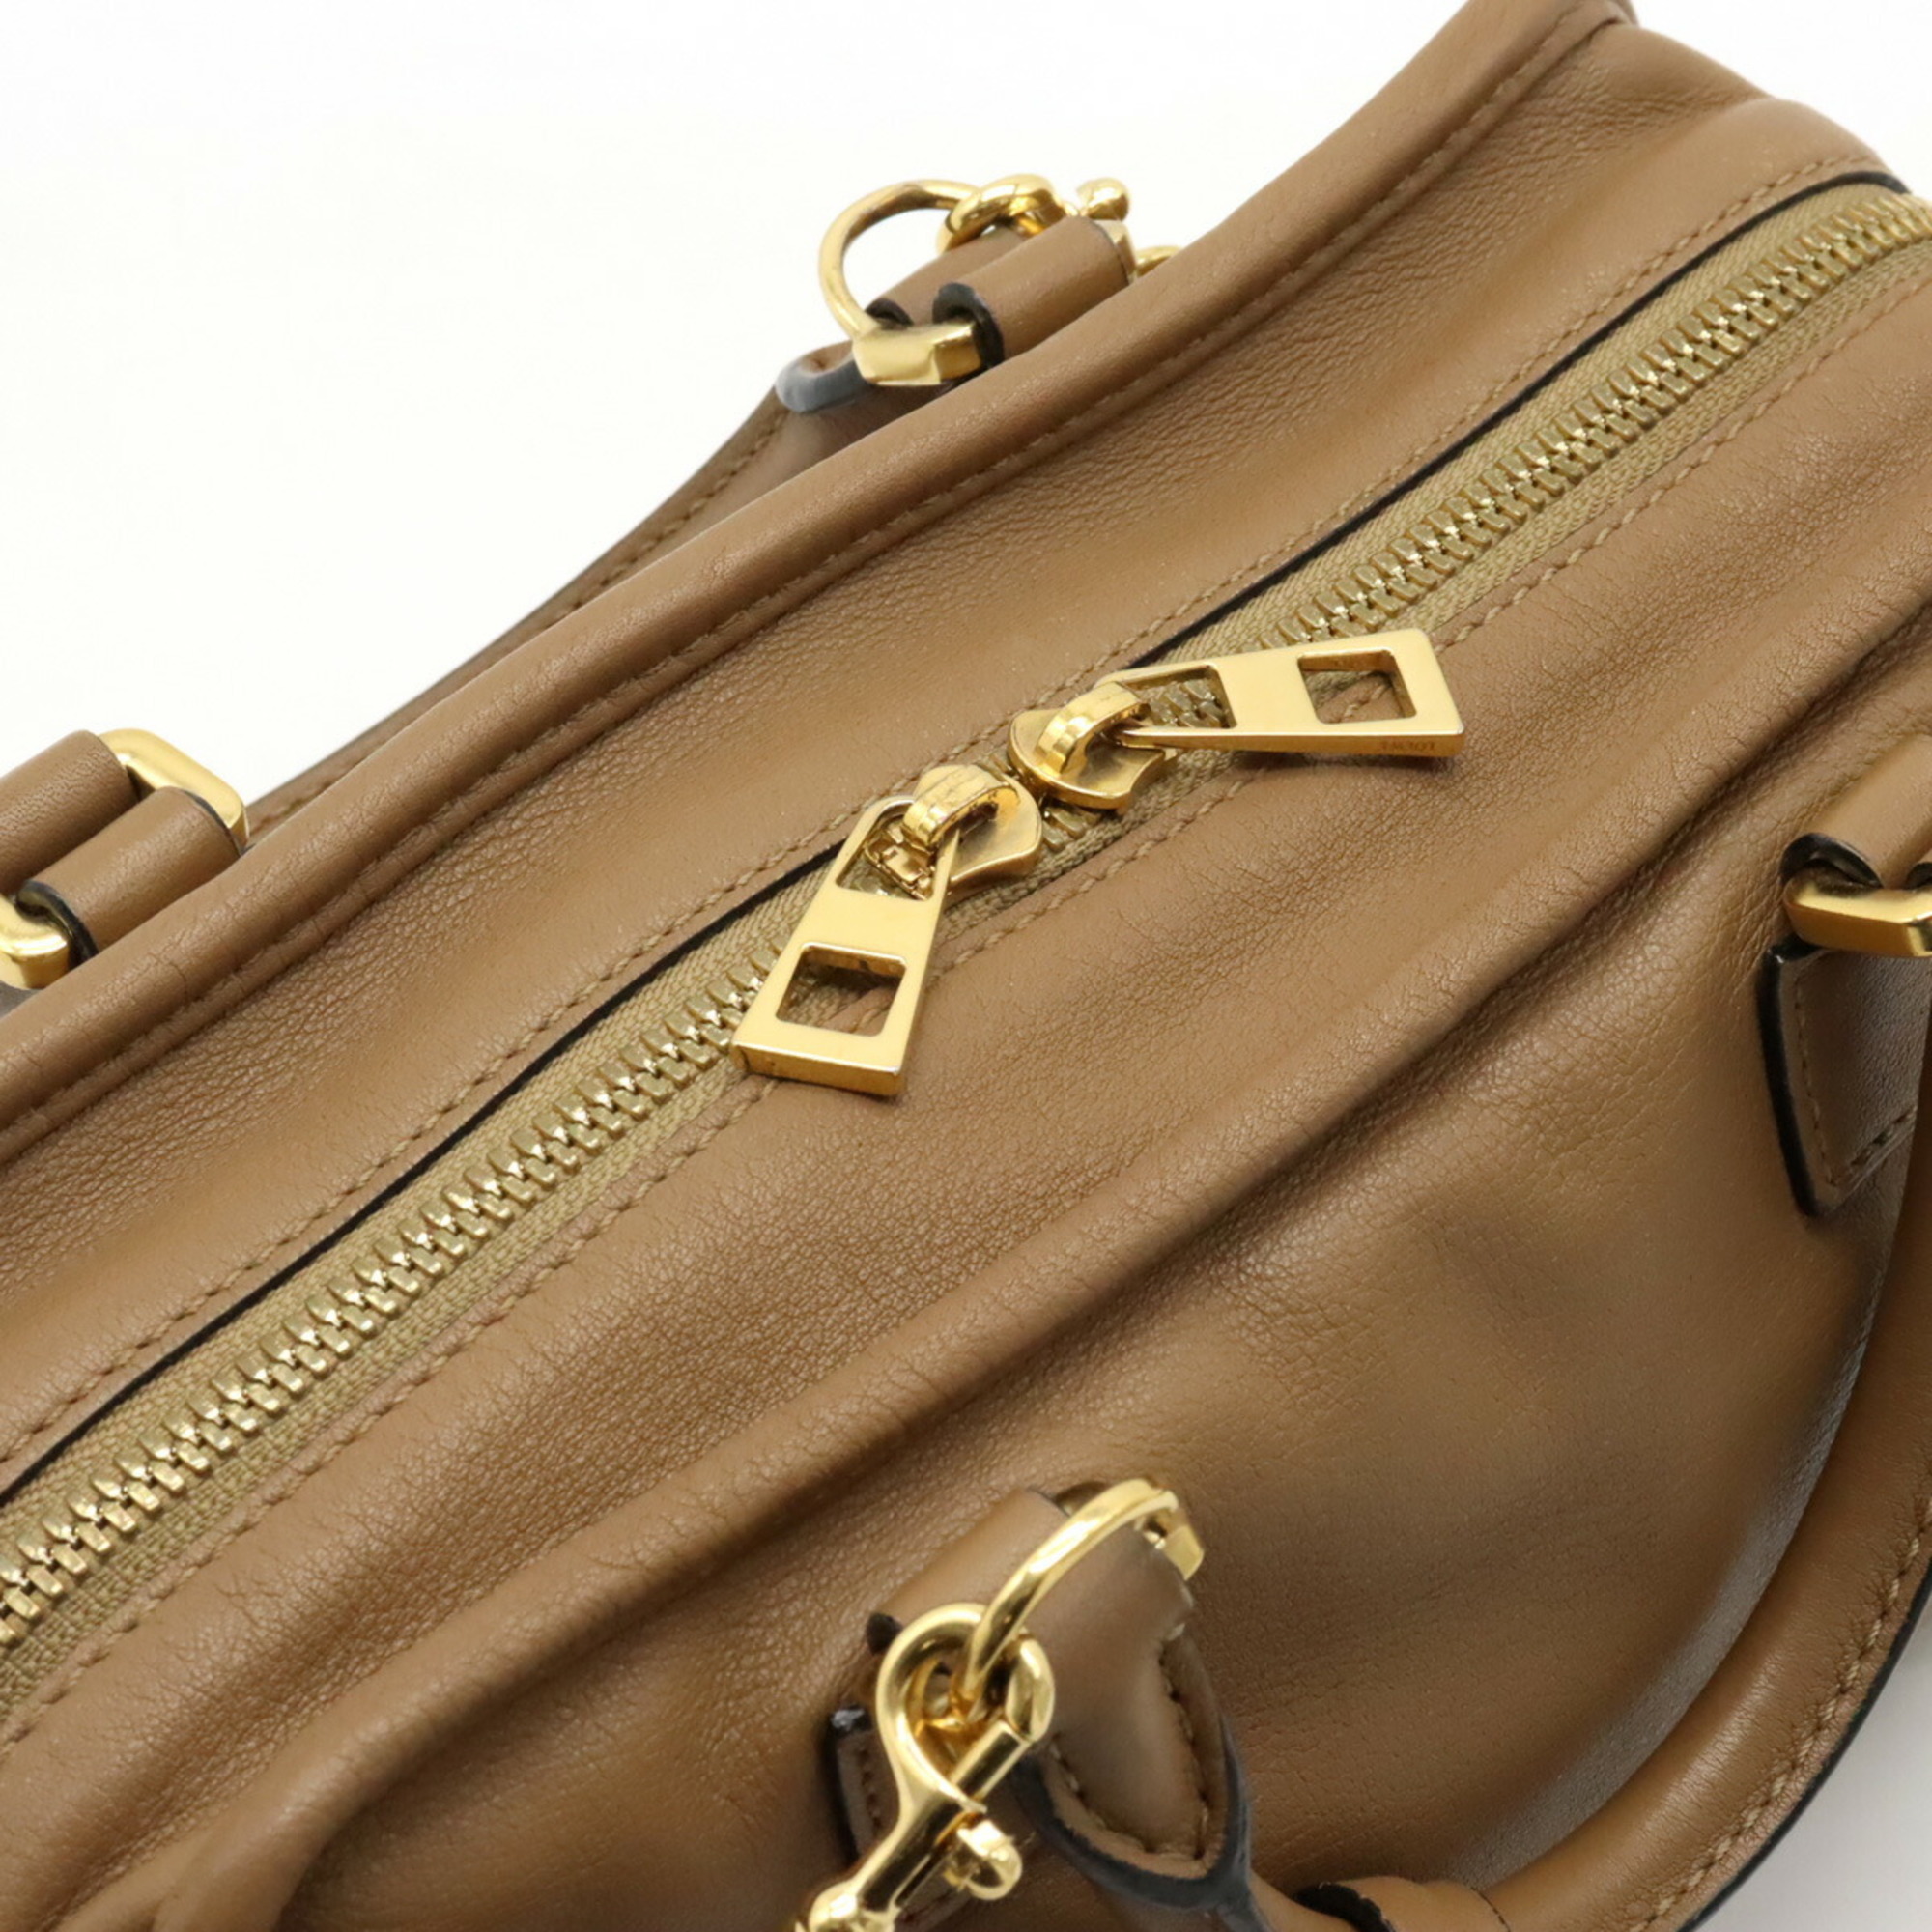 LOEWE Amazona 23 Anagram Handbag Boston Shoulder Bag Leather Brown Beige 352.30.N71